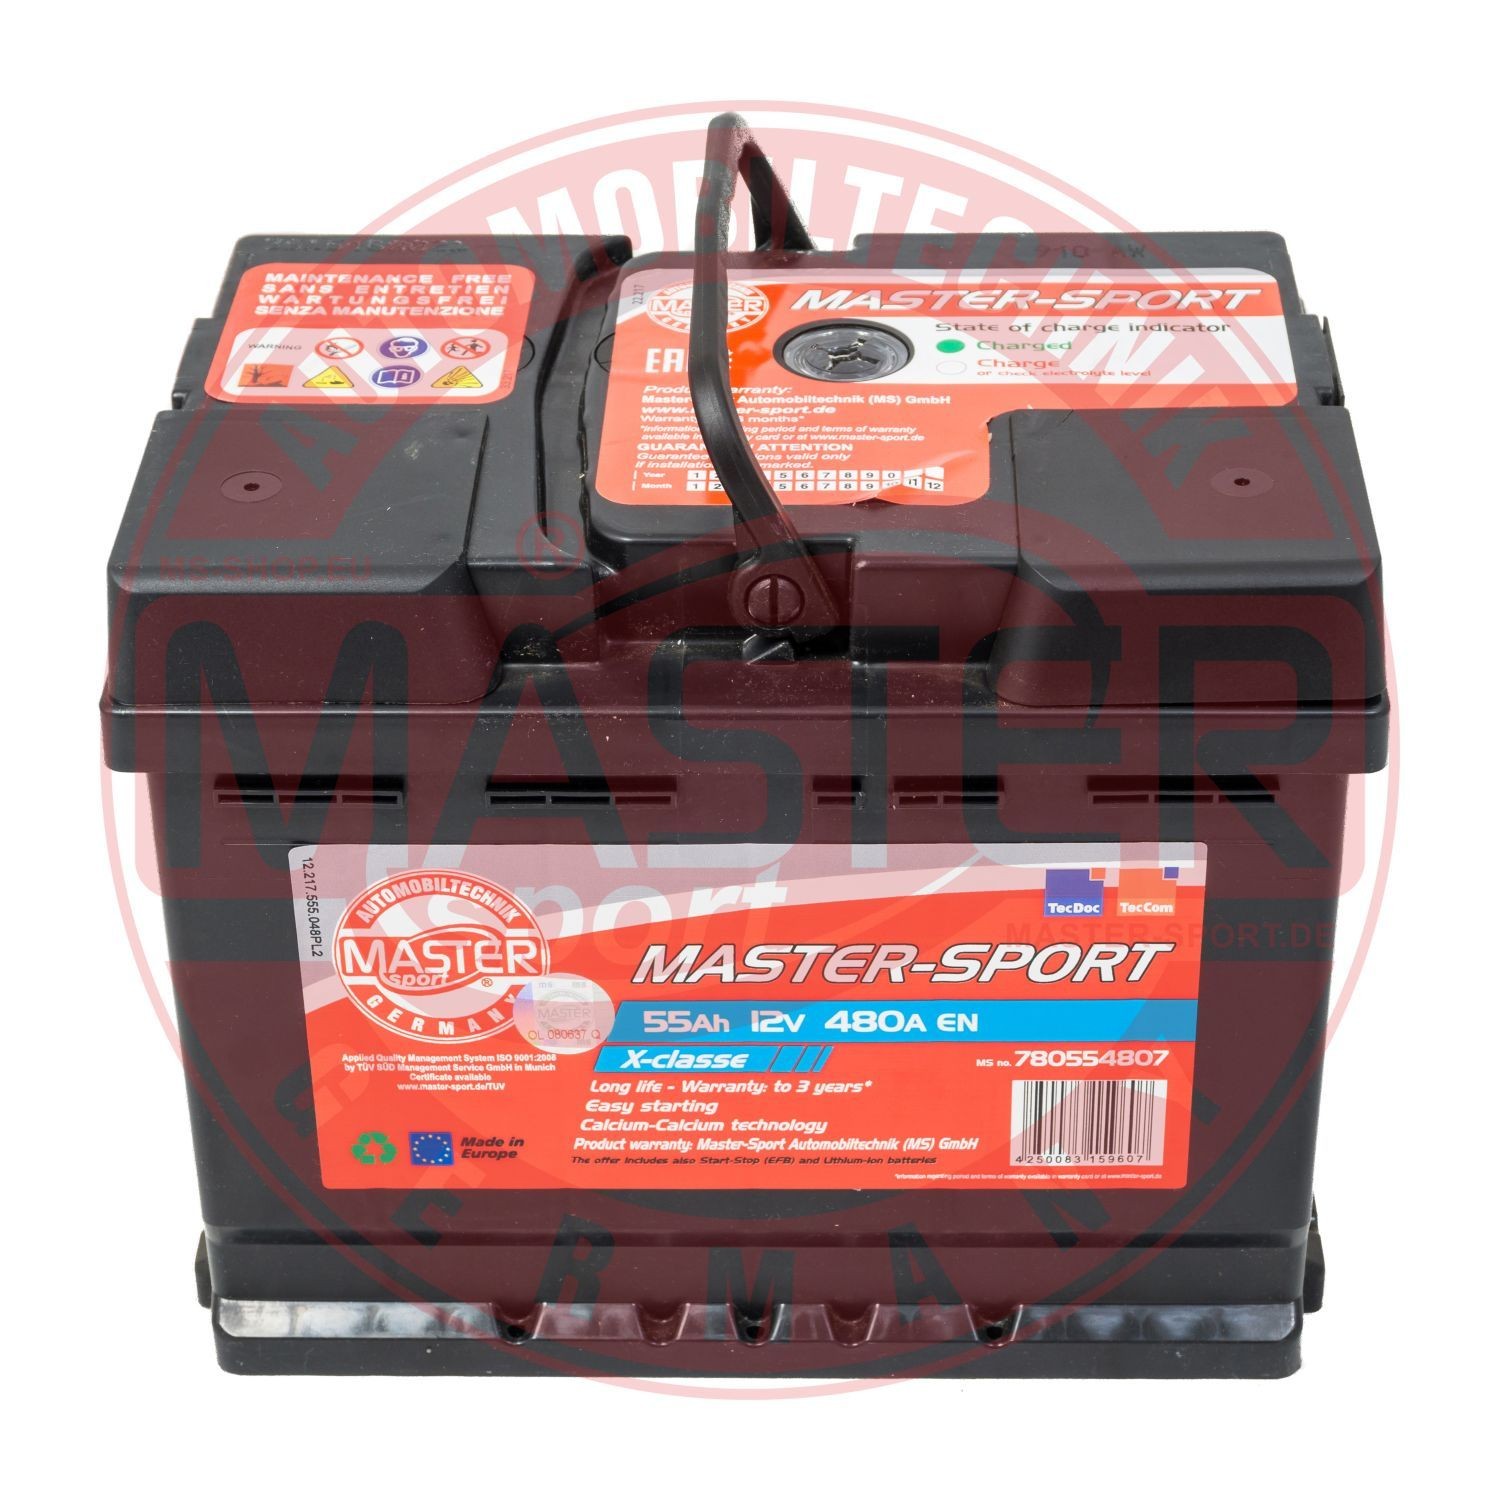 MASTER-SPORT 750554802 Battery 177 760 0